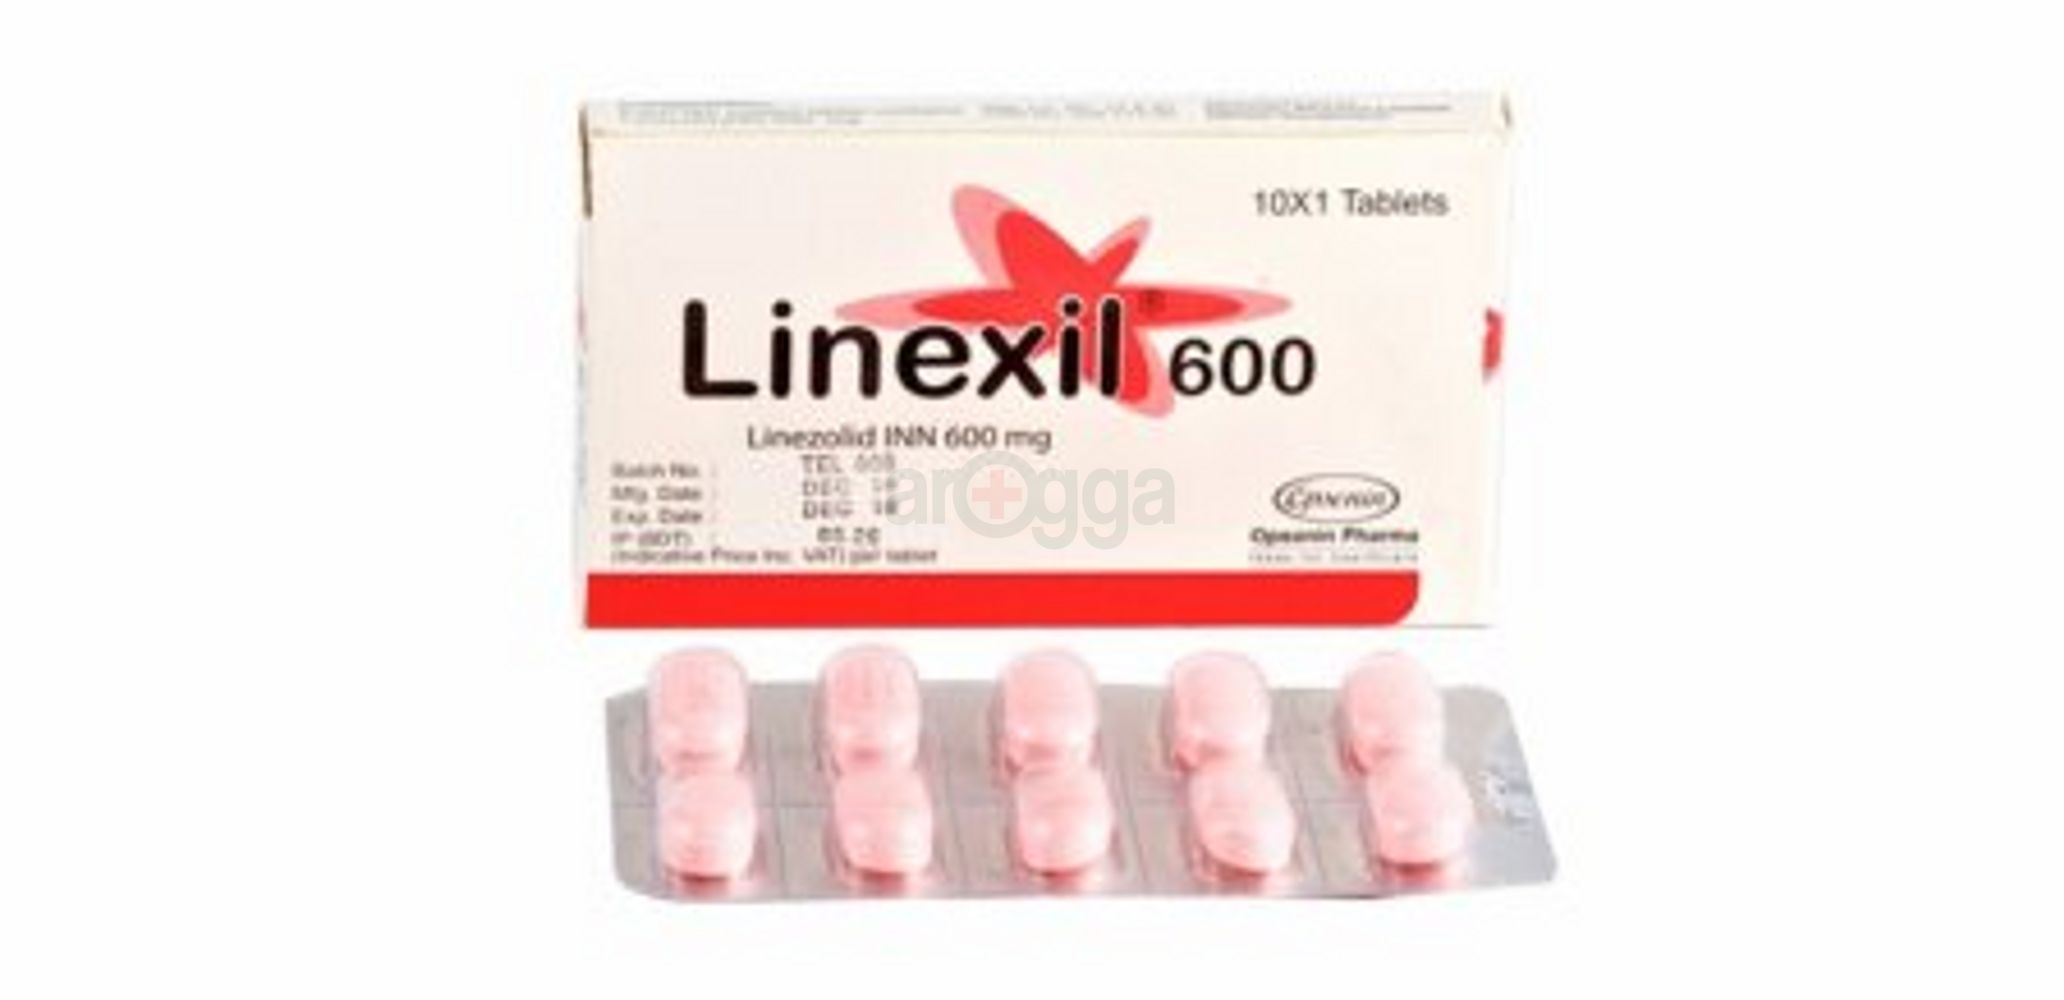 Linexil 600